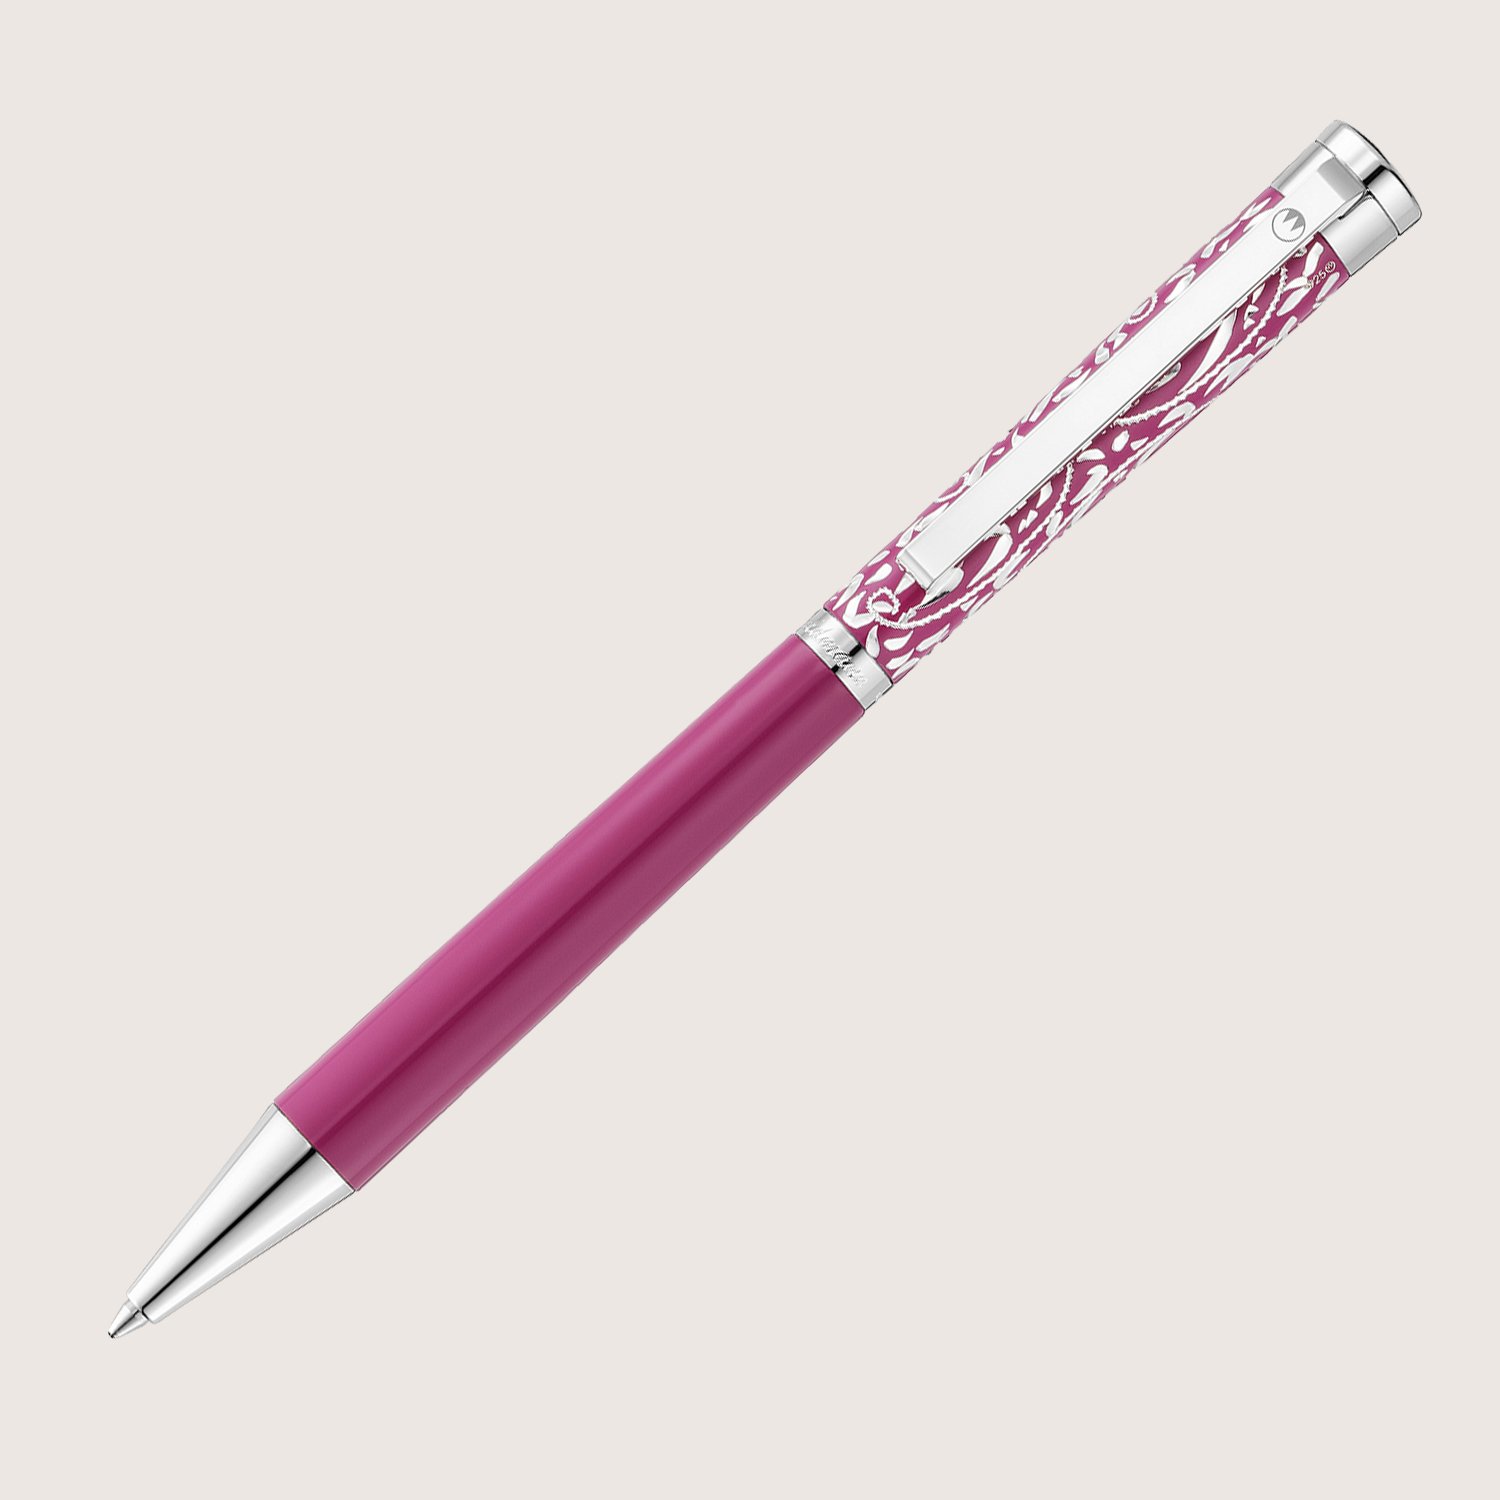 XETRA VIENNA Drehkugelschreiber Lack pink mit Handgravur - Special Edition